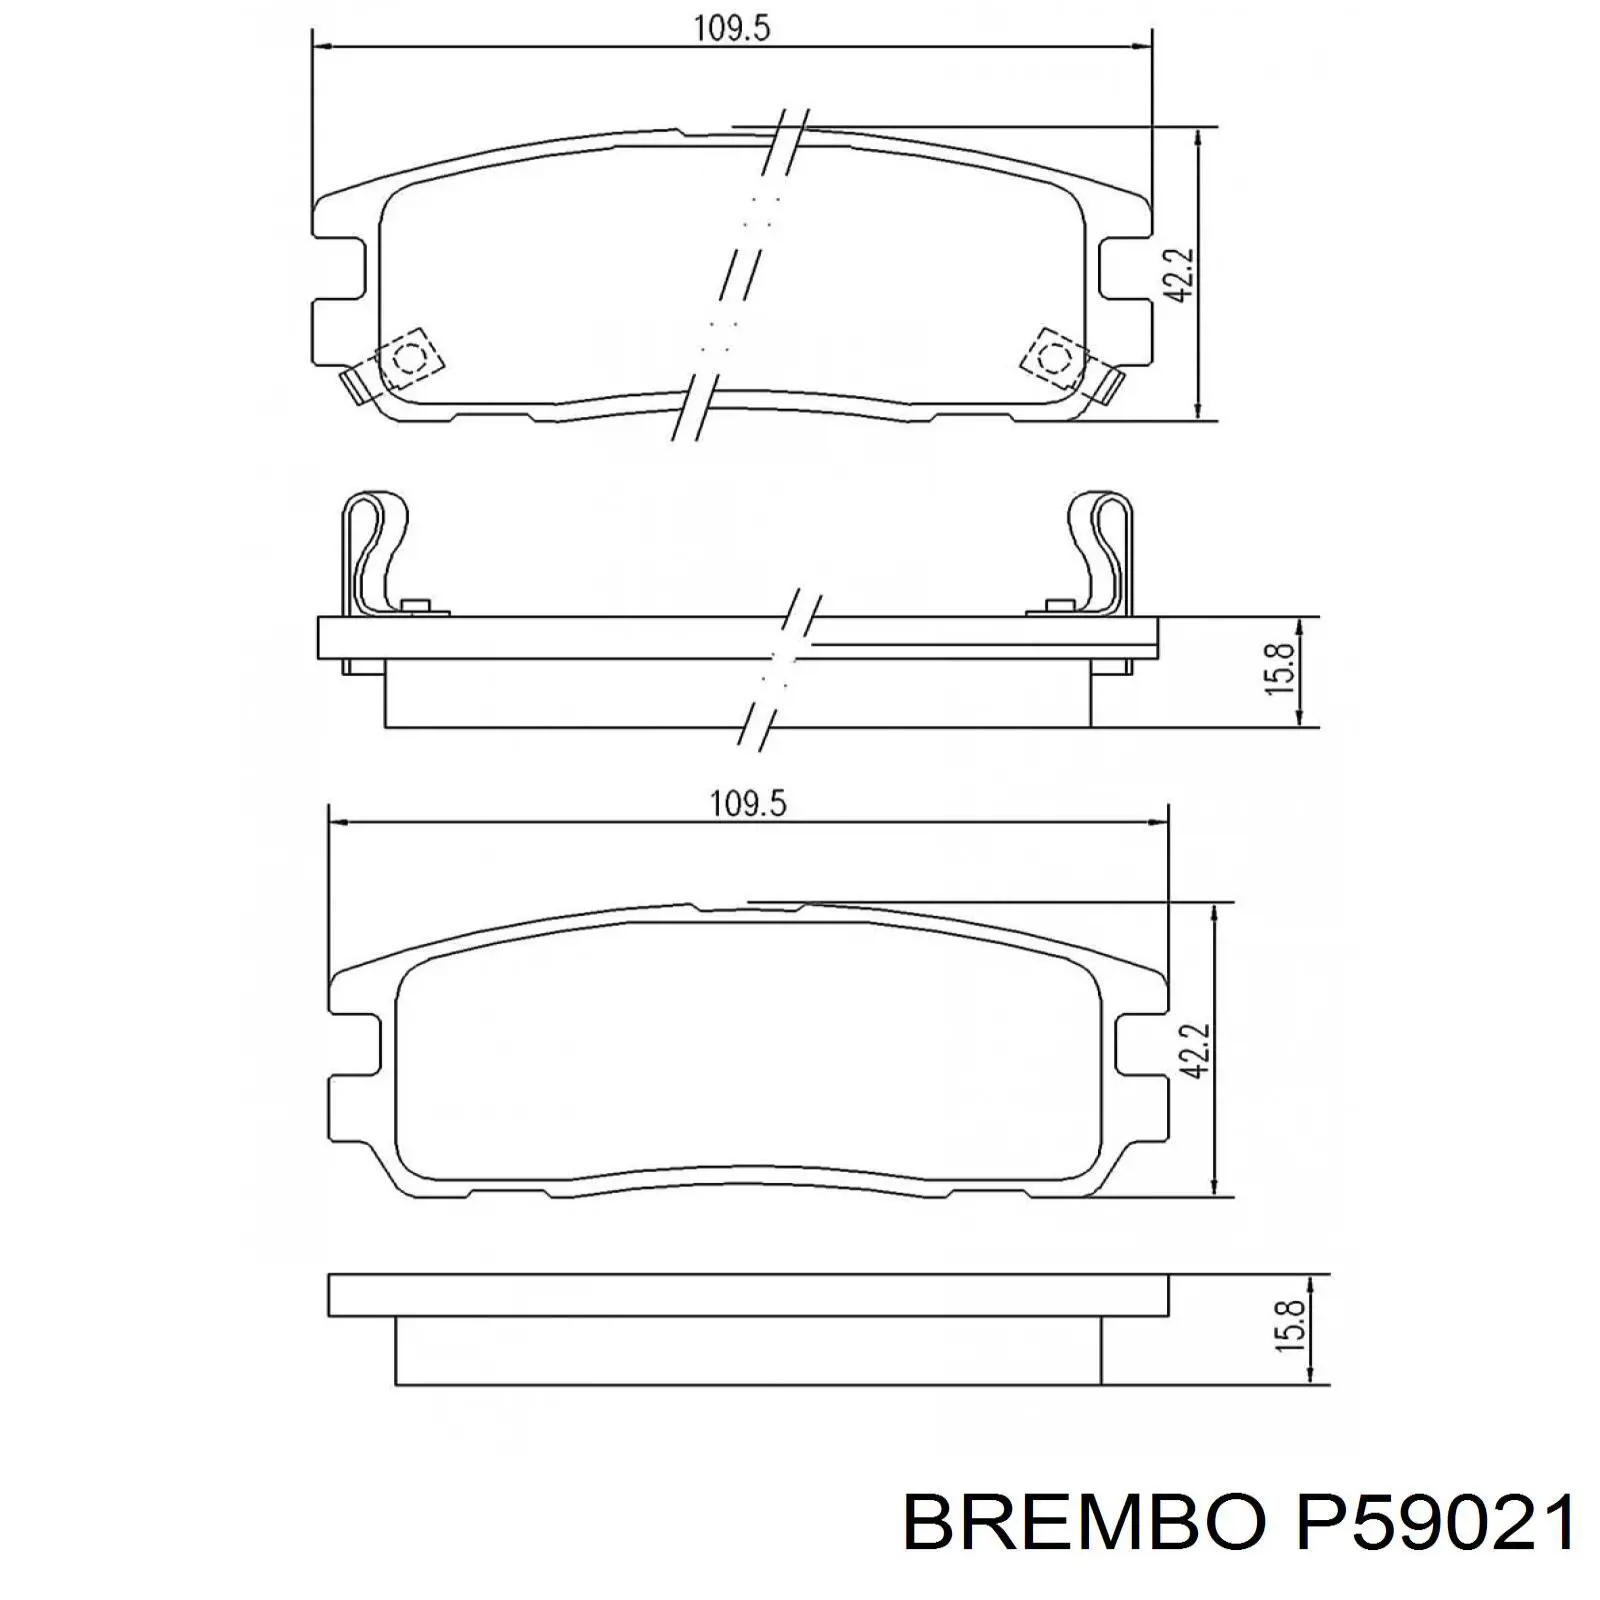 Pastillas de freno traseras P59021 Brembo